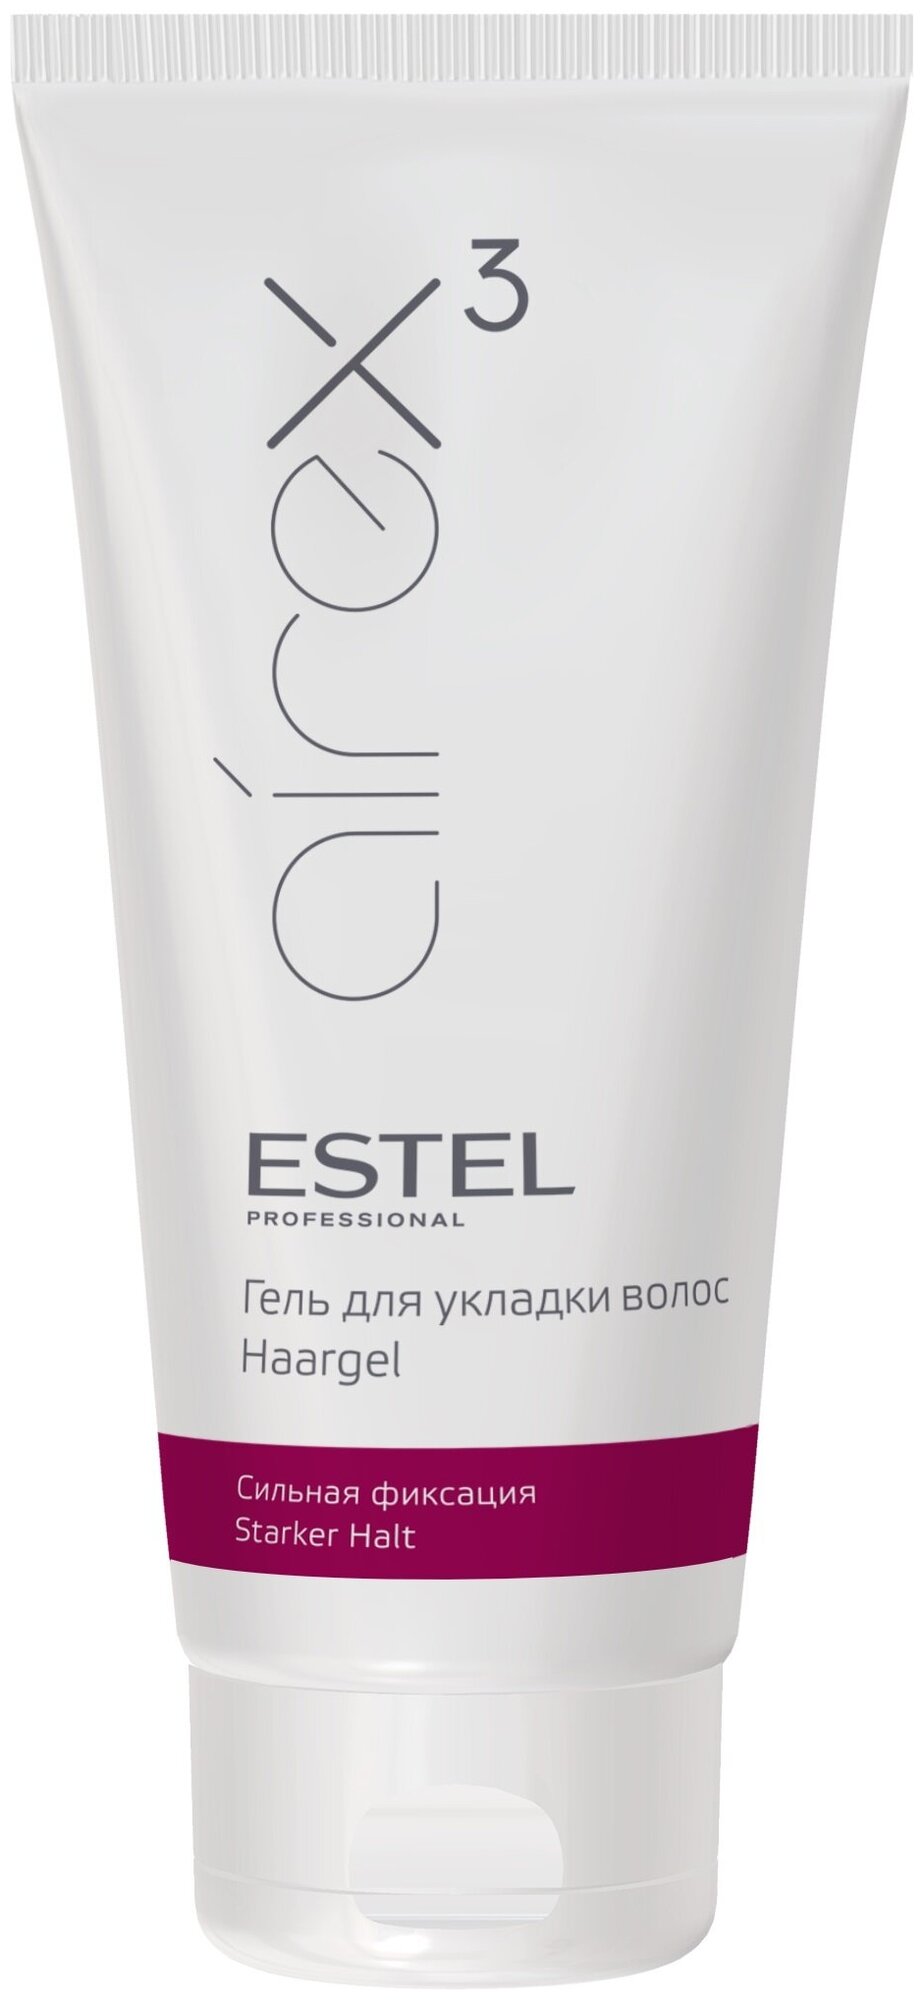 Estel Professional Гель для укладки волос сильная фиксация AIREX 200 мл.